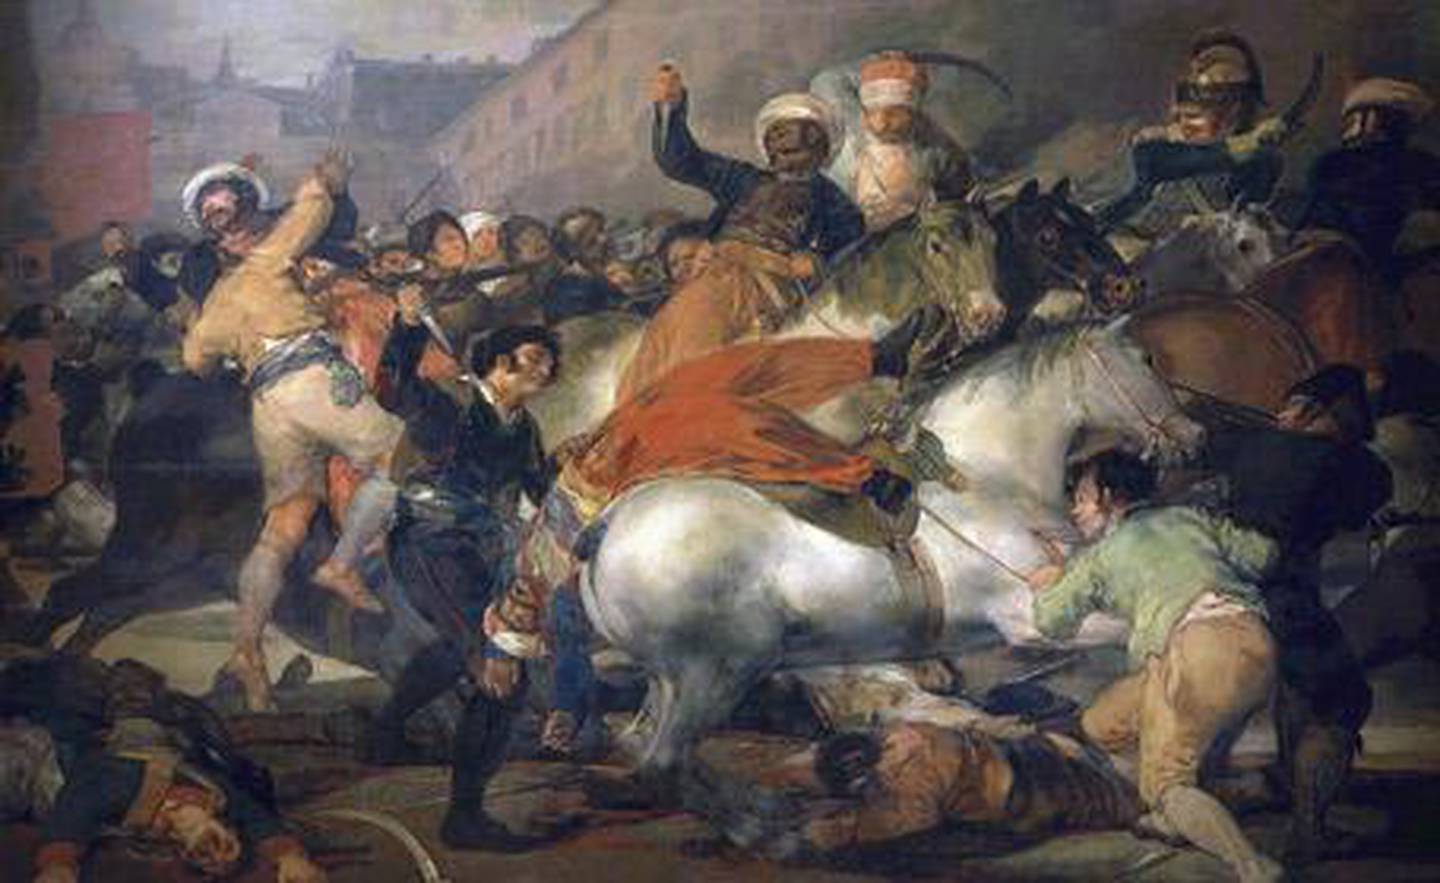 جنود المماليك الذين يخدمون في جيش نابليون يقاتلون المتمردين الإسبان في فيلم غويا الثاني في مايو 1808 (لوم المماليك).